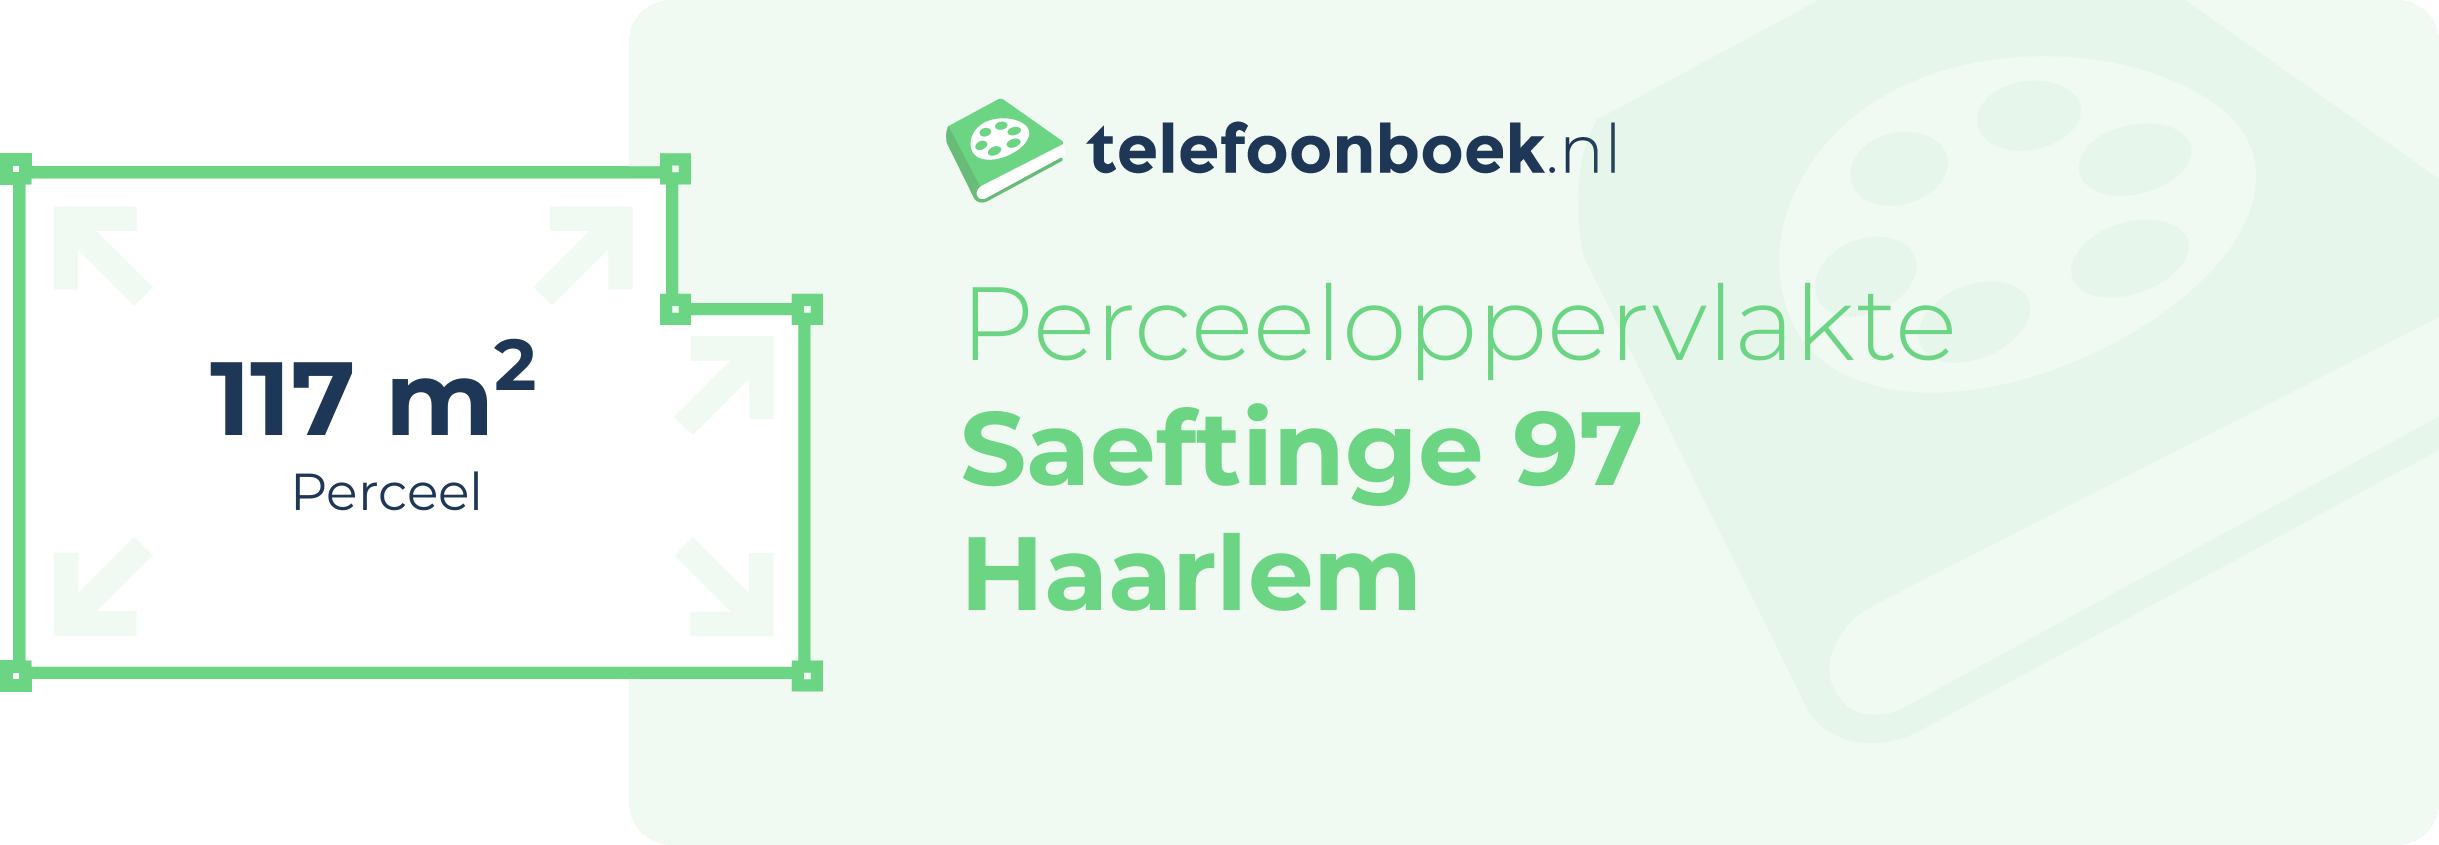 Perceeloppervlakte Saeftinge 97 Haarlem